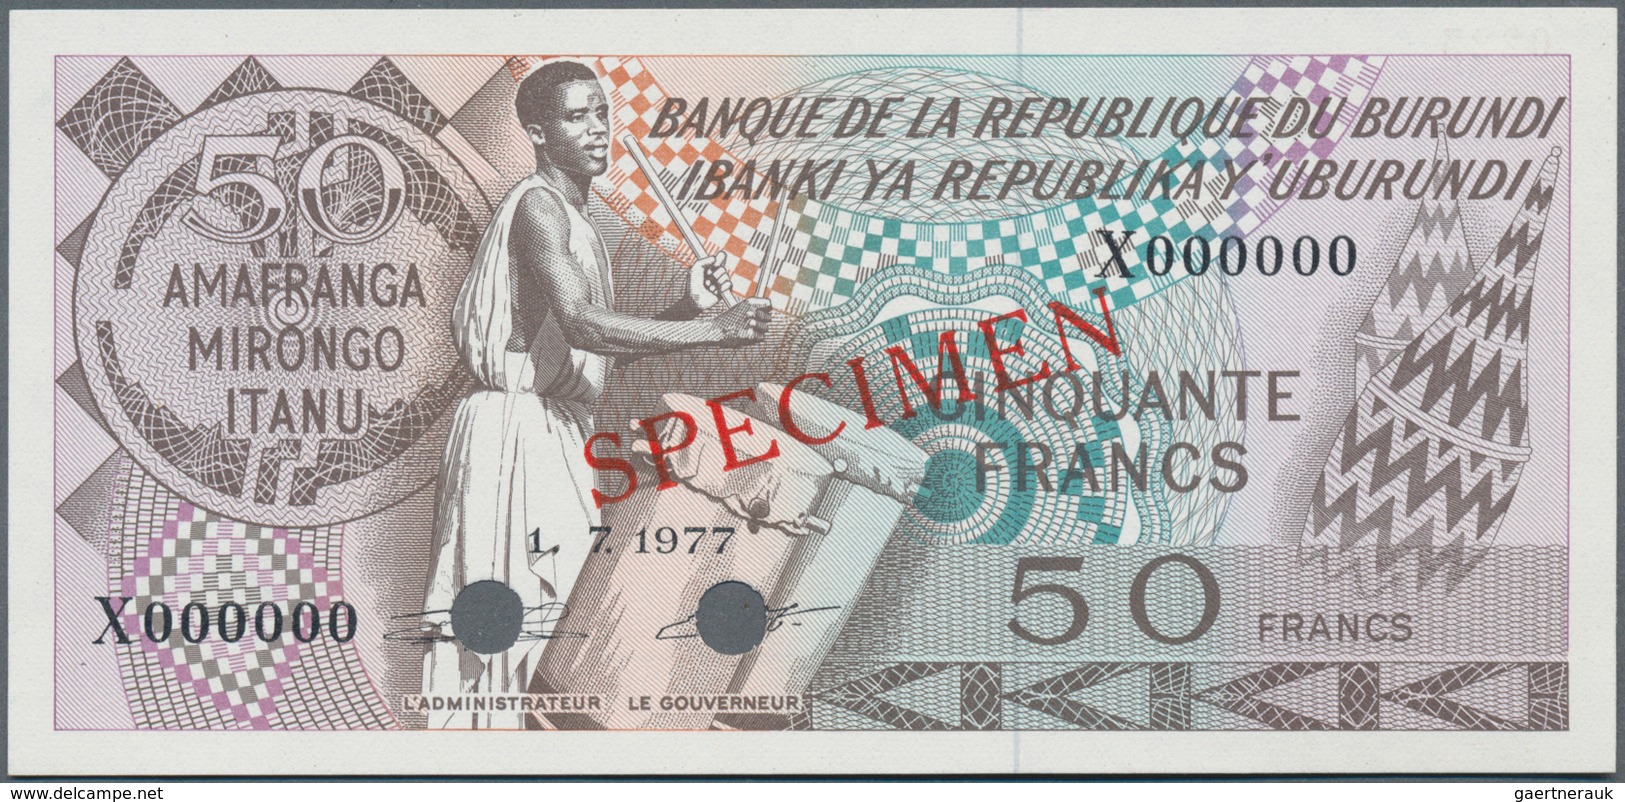 Burundi:  Banque De La République Du Burundi 50 Francs 1977 SPECIMEN, P.28s With Punch Hole Cancella - Burundi